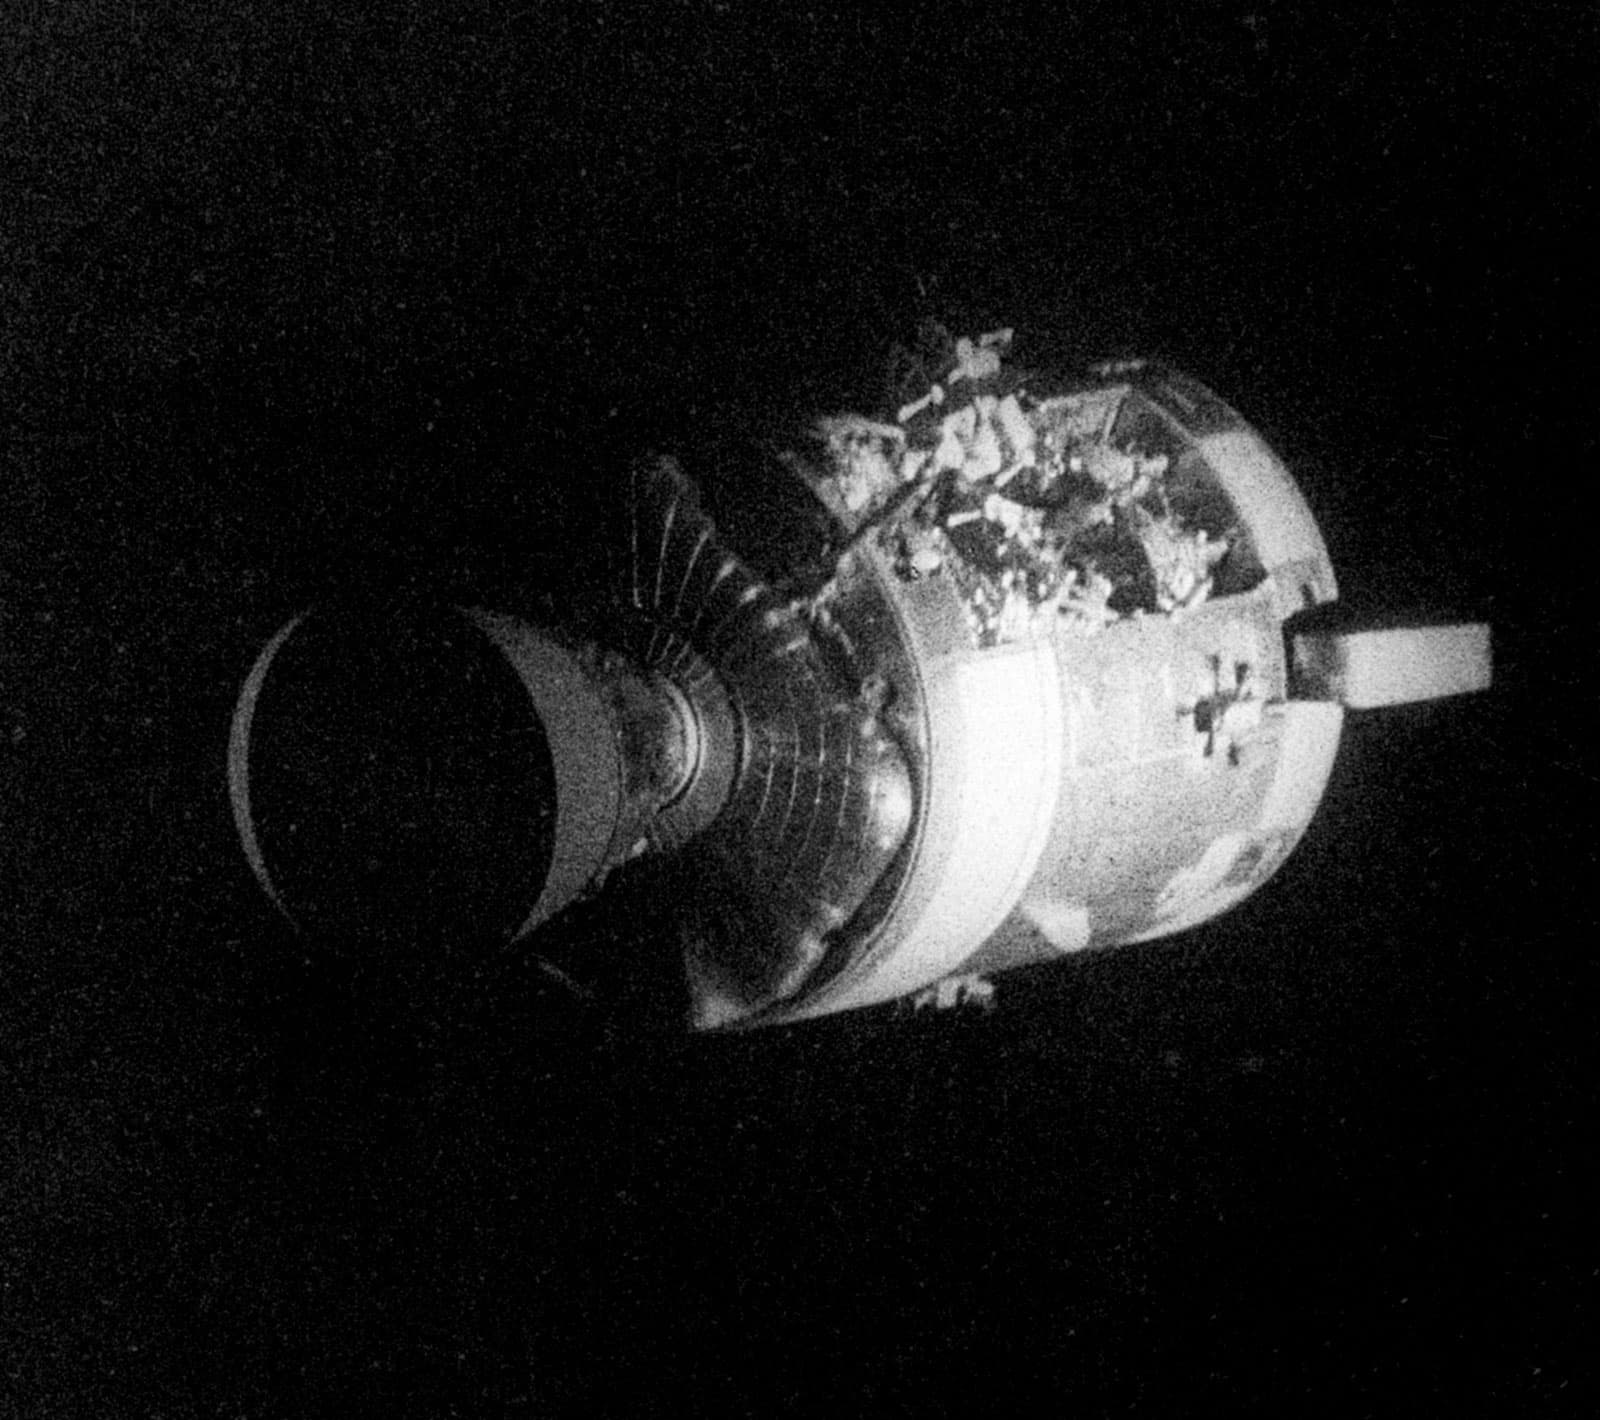 רכב הנחיתה הירחי "אקווריוס" כפי שצולם מתא הפיקוד "אודיסאה". קרדיט: NASA